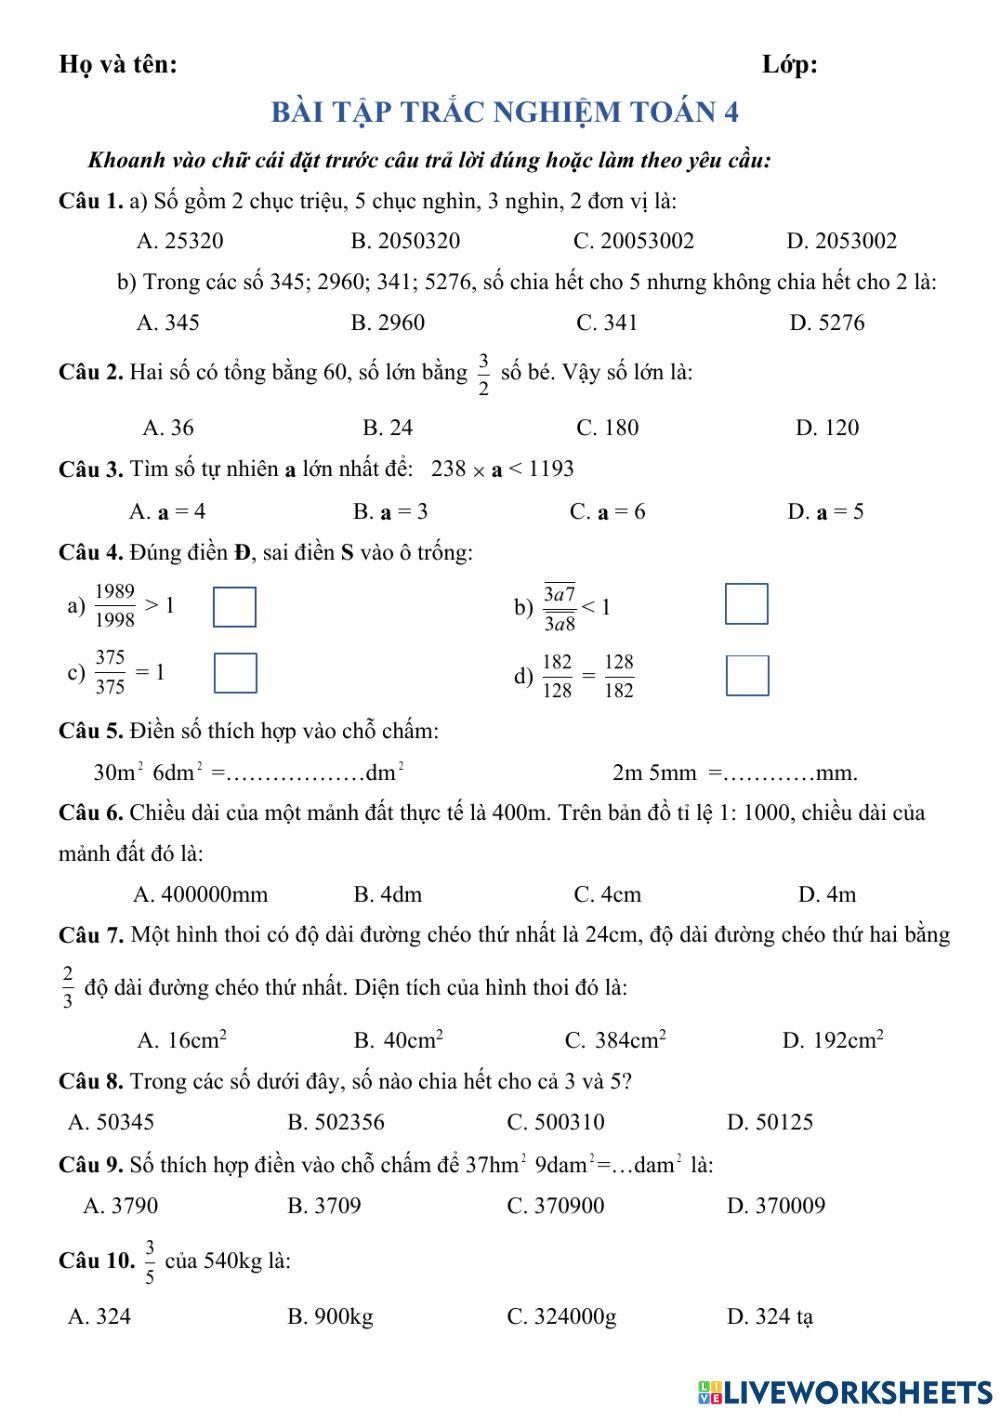 Bài tập trắc nghiệm toán 4